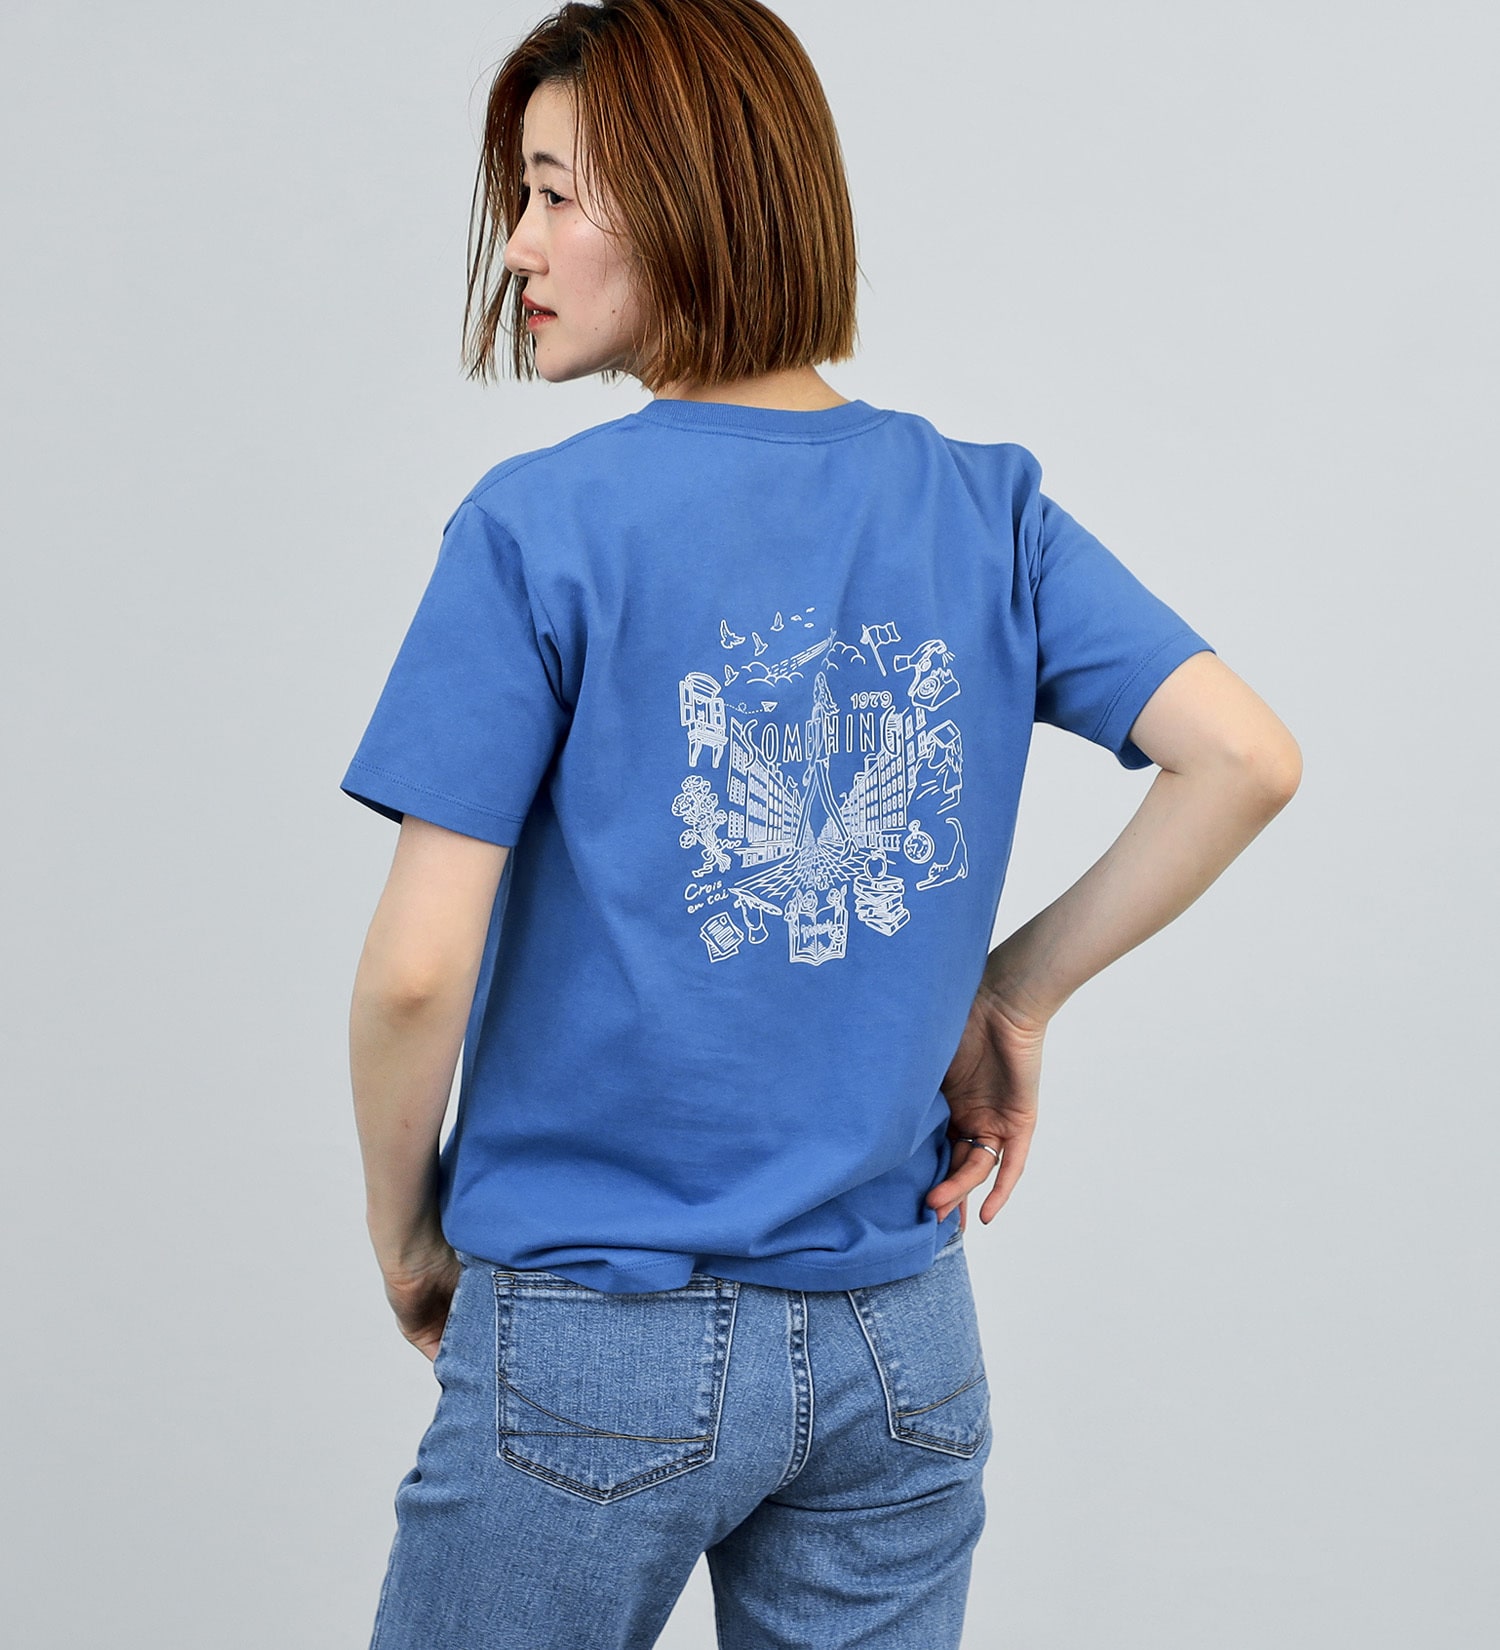 SOMETHING(サムシング)のSOMETHING コンセプトロゴ半袖Tシャツ|トップス/Tシャツ/カットソー/レディース|ブルー